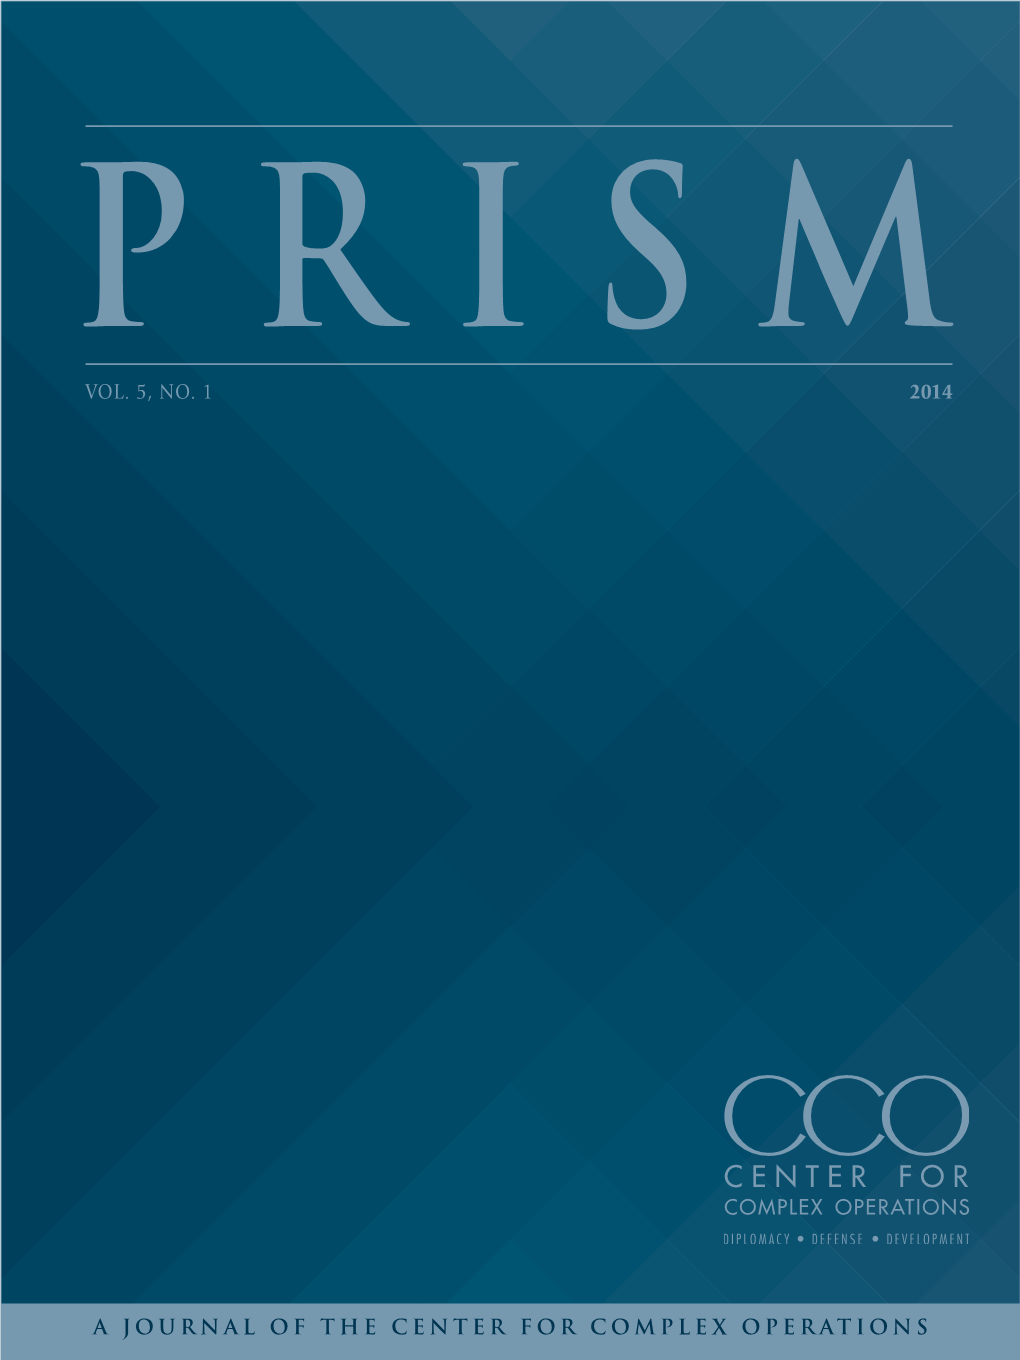 PRISM Vol 5, No.1